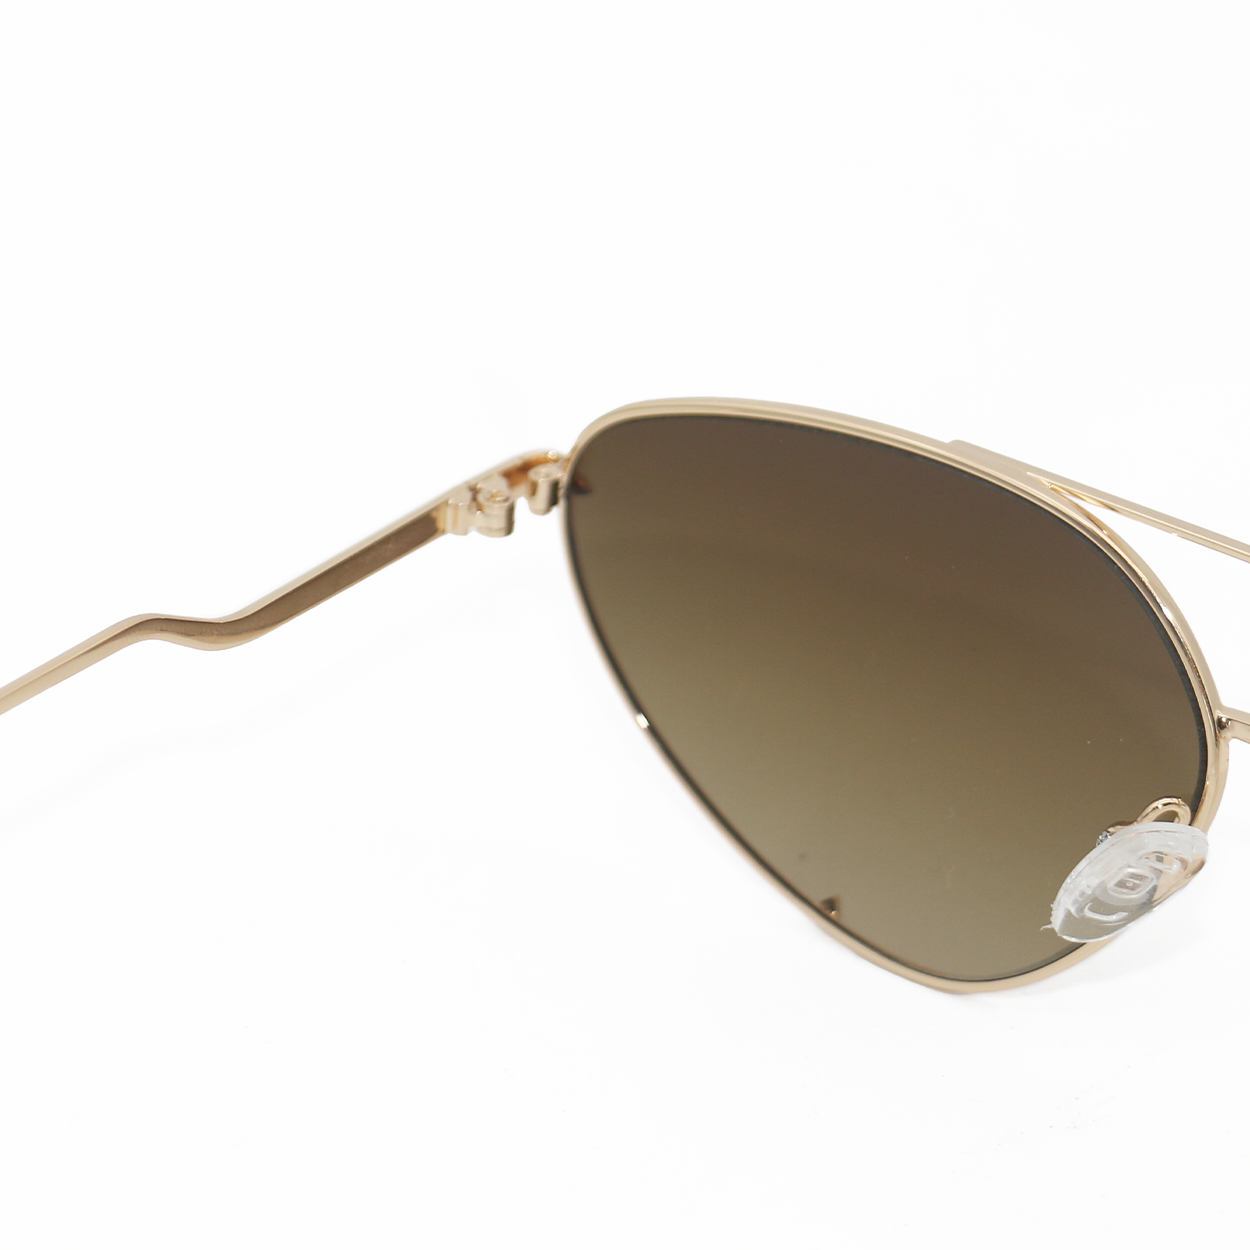 Lucky Star | Brown Cat-Eye Aviator Women's Sunglasses | Arm Details |TopFoxx